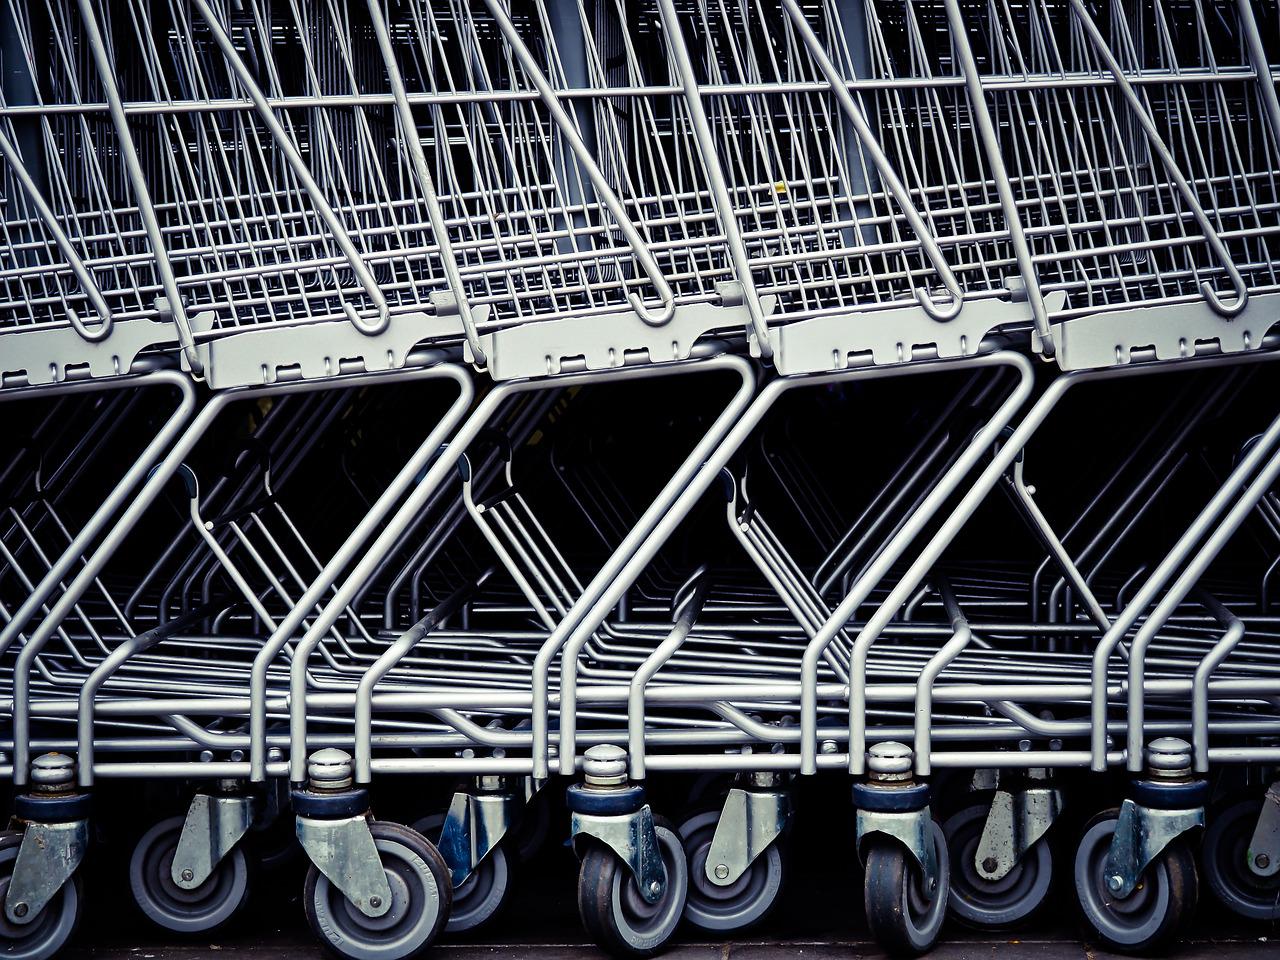 Carrefour : une nouvelle opération anti-inflation chez le distributeur